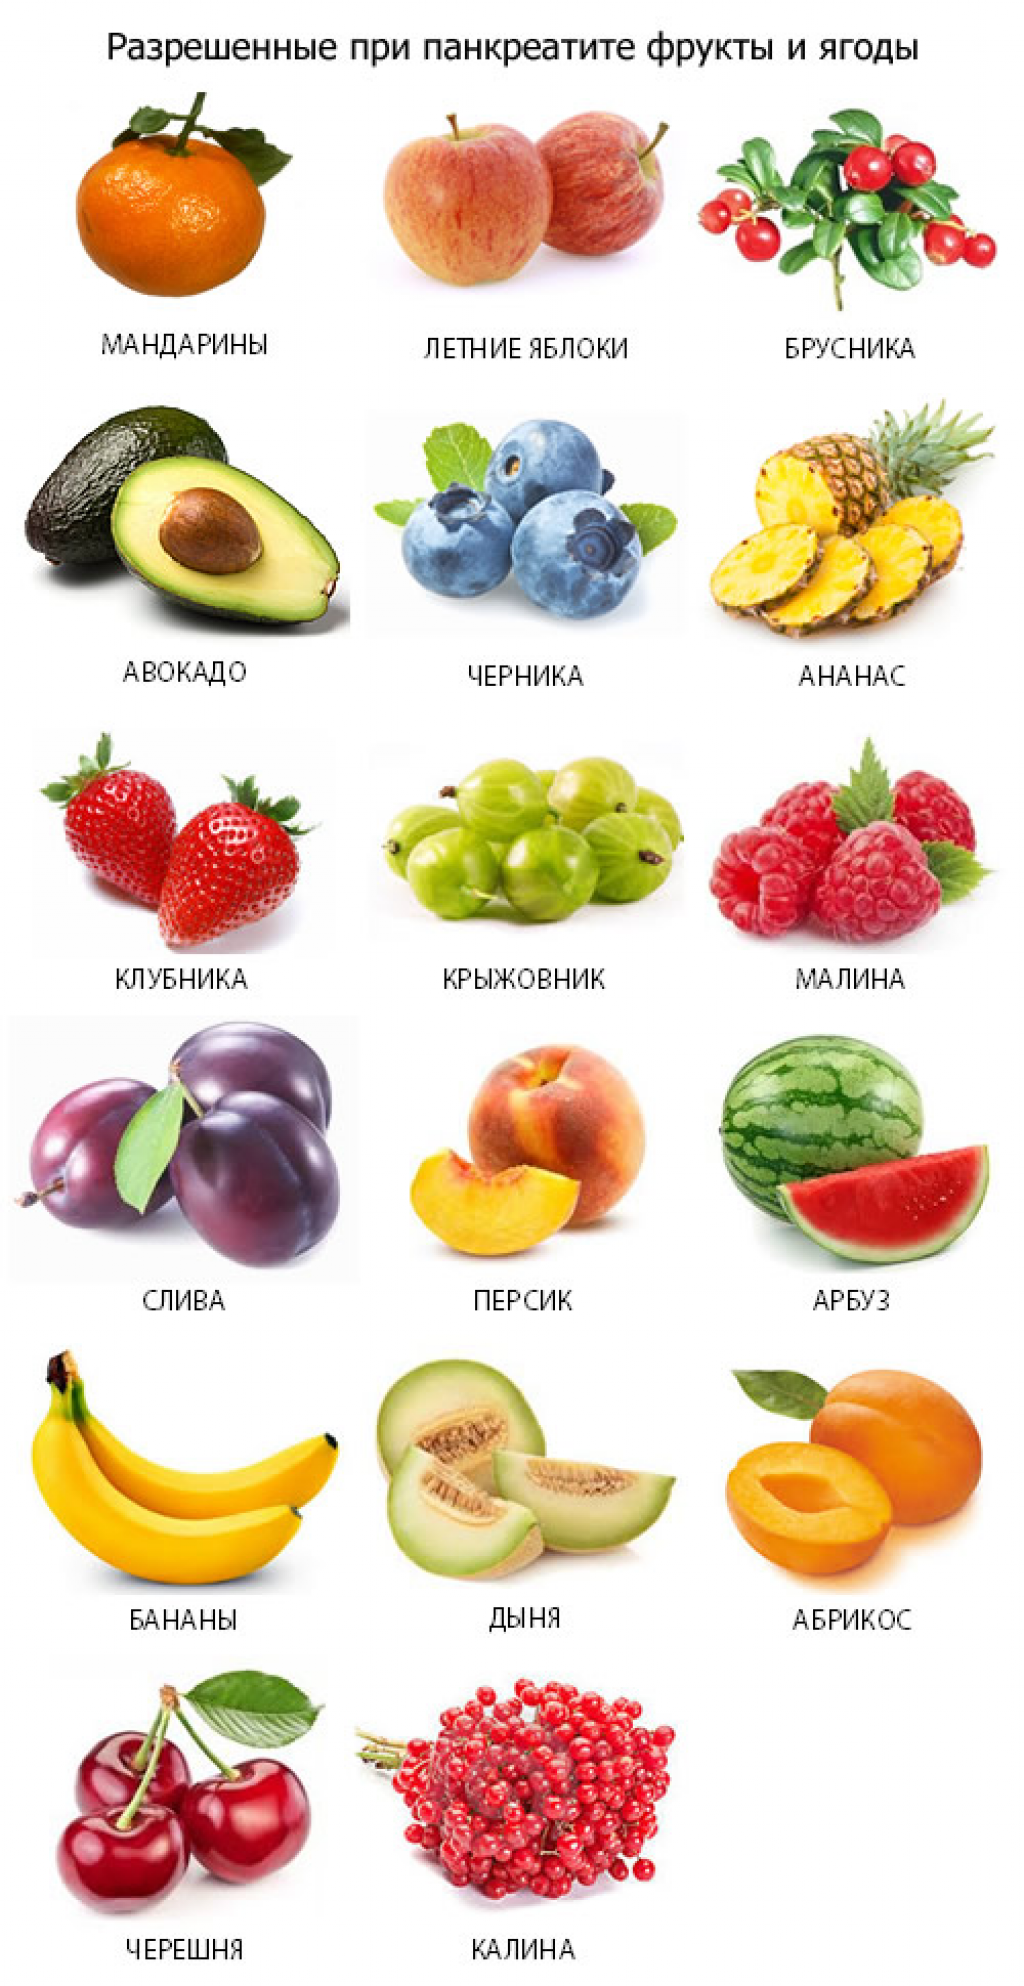 Какие фрукты можно детям. Список овощей разрешенных при панкреатите. Разрешенные фрукты при панкреатите. Список фруктов при панкреатите. Фрукты и овощи разрешенные при панкреатите.